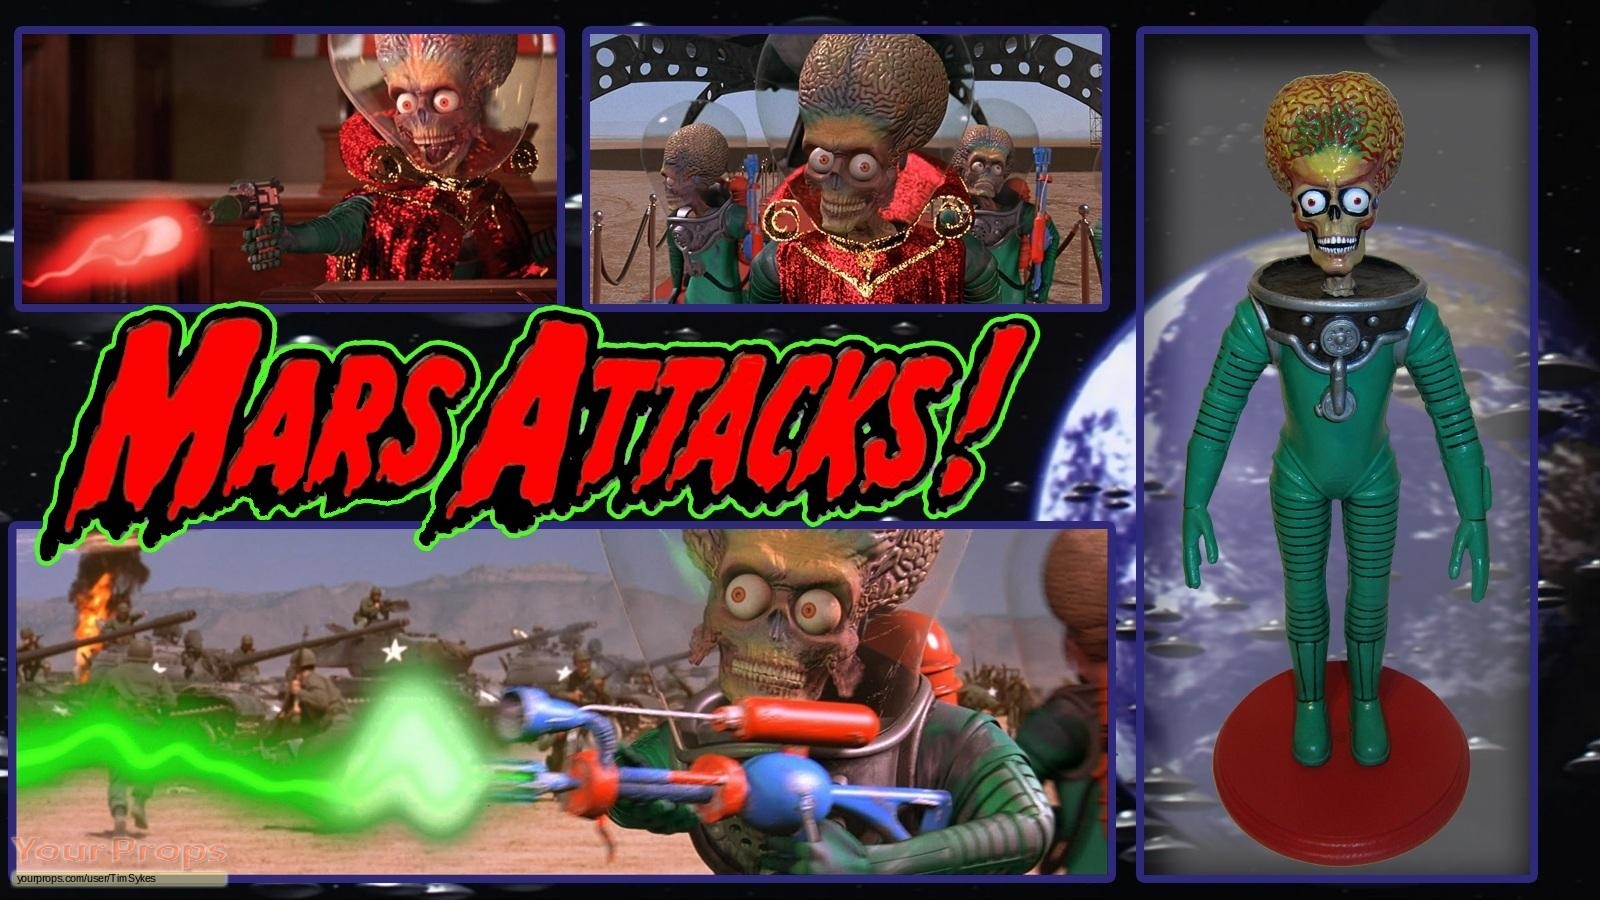 Mars Attacks 1996